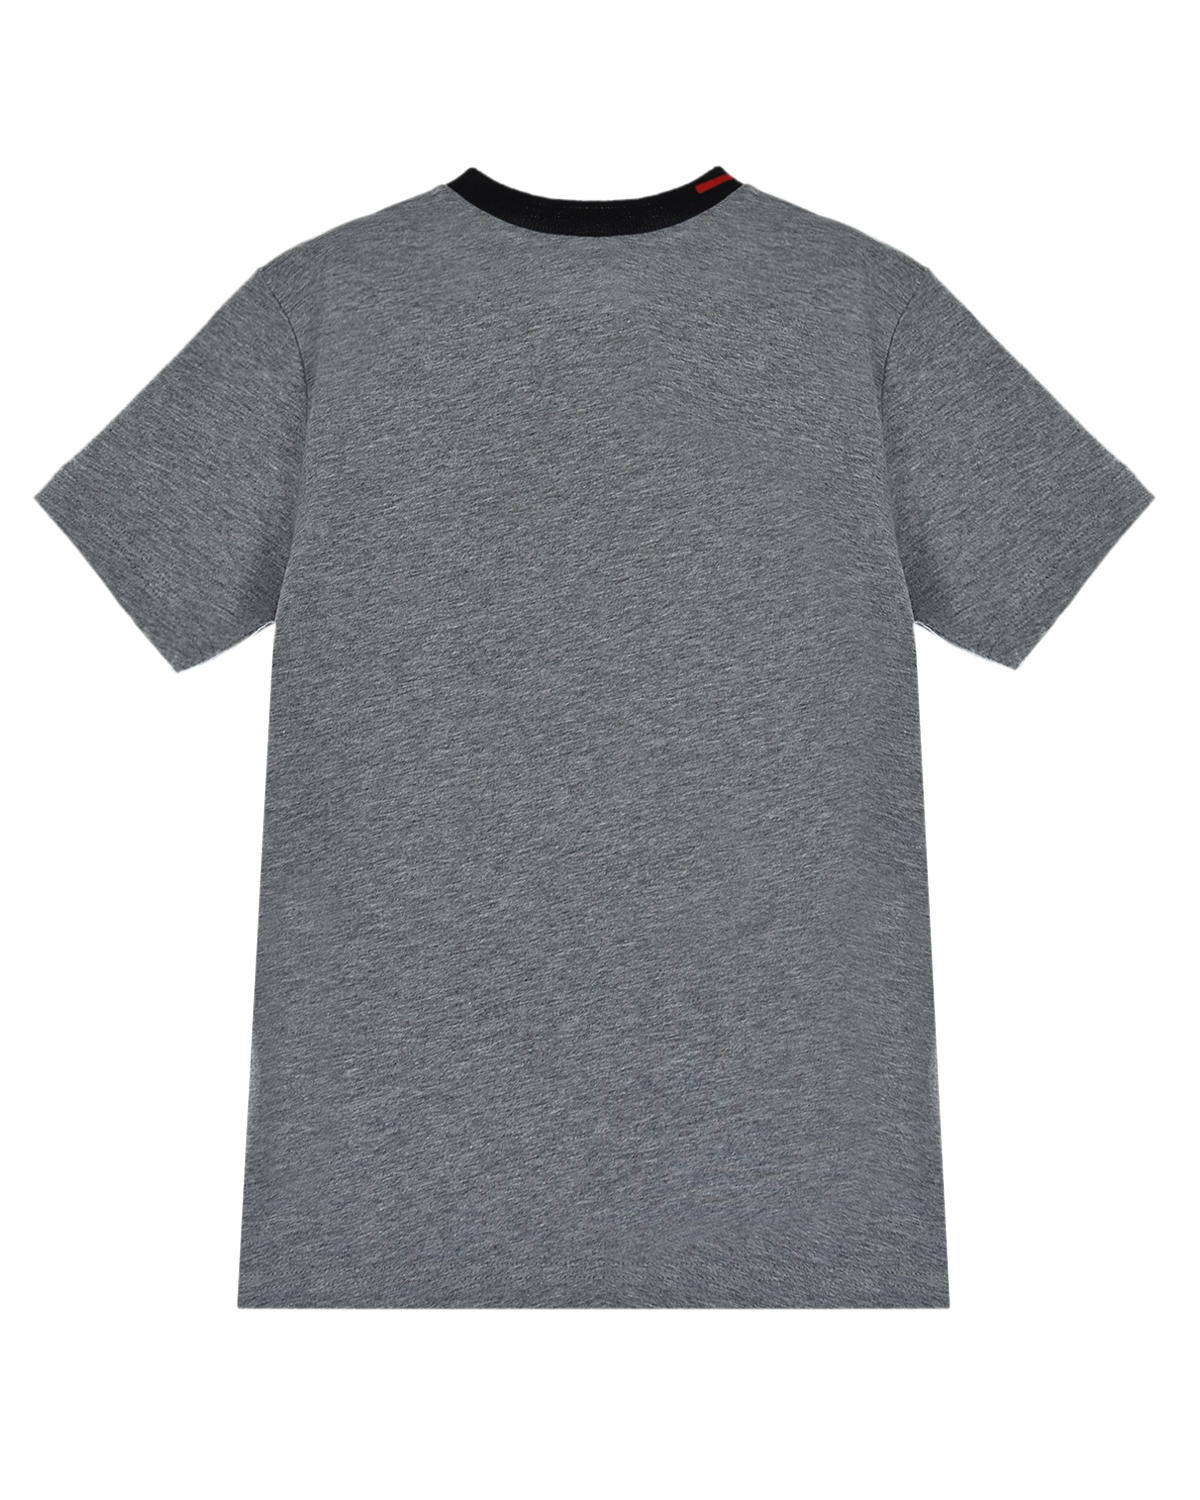 Серая футболка с трикотажным воротом No. 21 детская, размер 128, цвет серый - фото 3